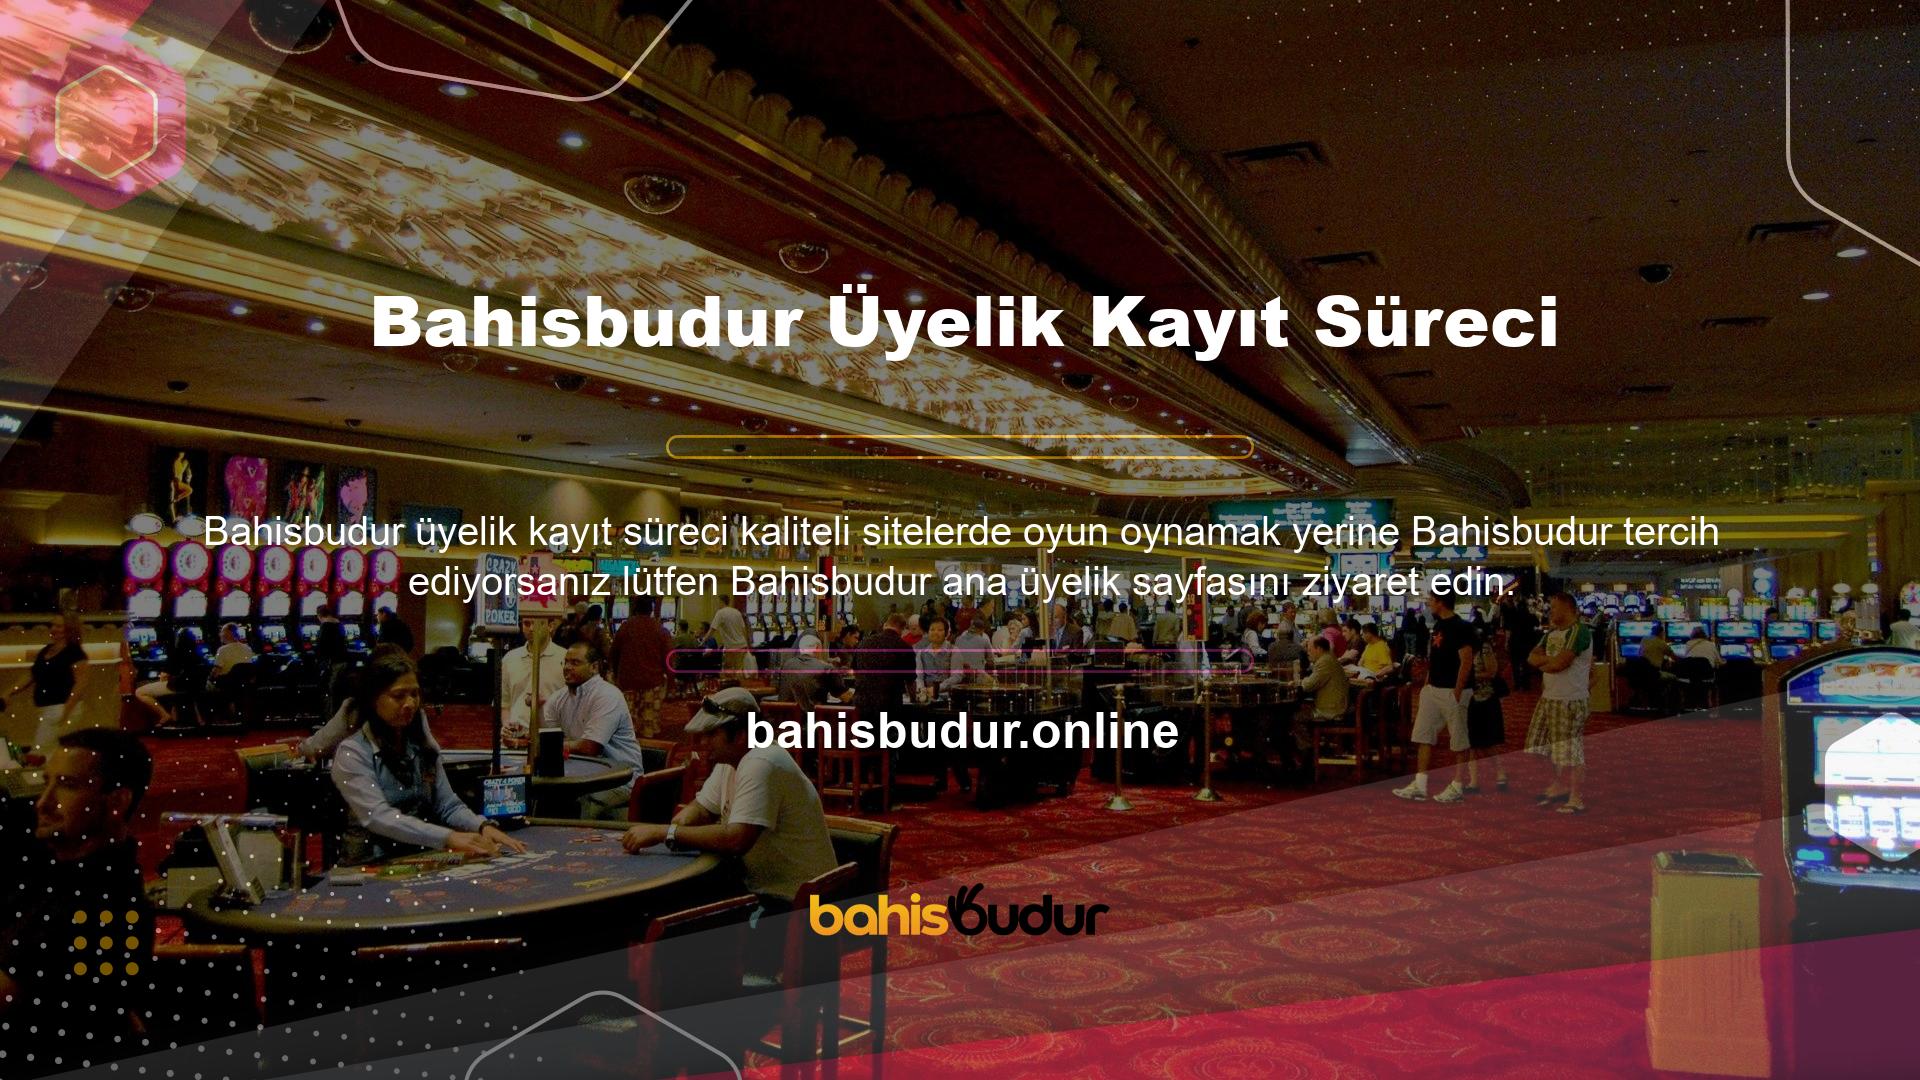 Ana sayfaya güncel web sitesi adresiyle erişen oyuncuların sağ üst köşedeki "Bahisbudur Üyelik Kaydı" butonuna tıklamaları gerekmektedir